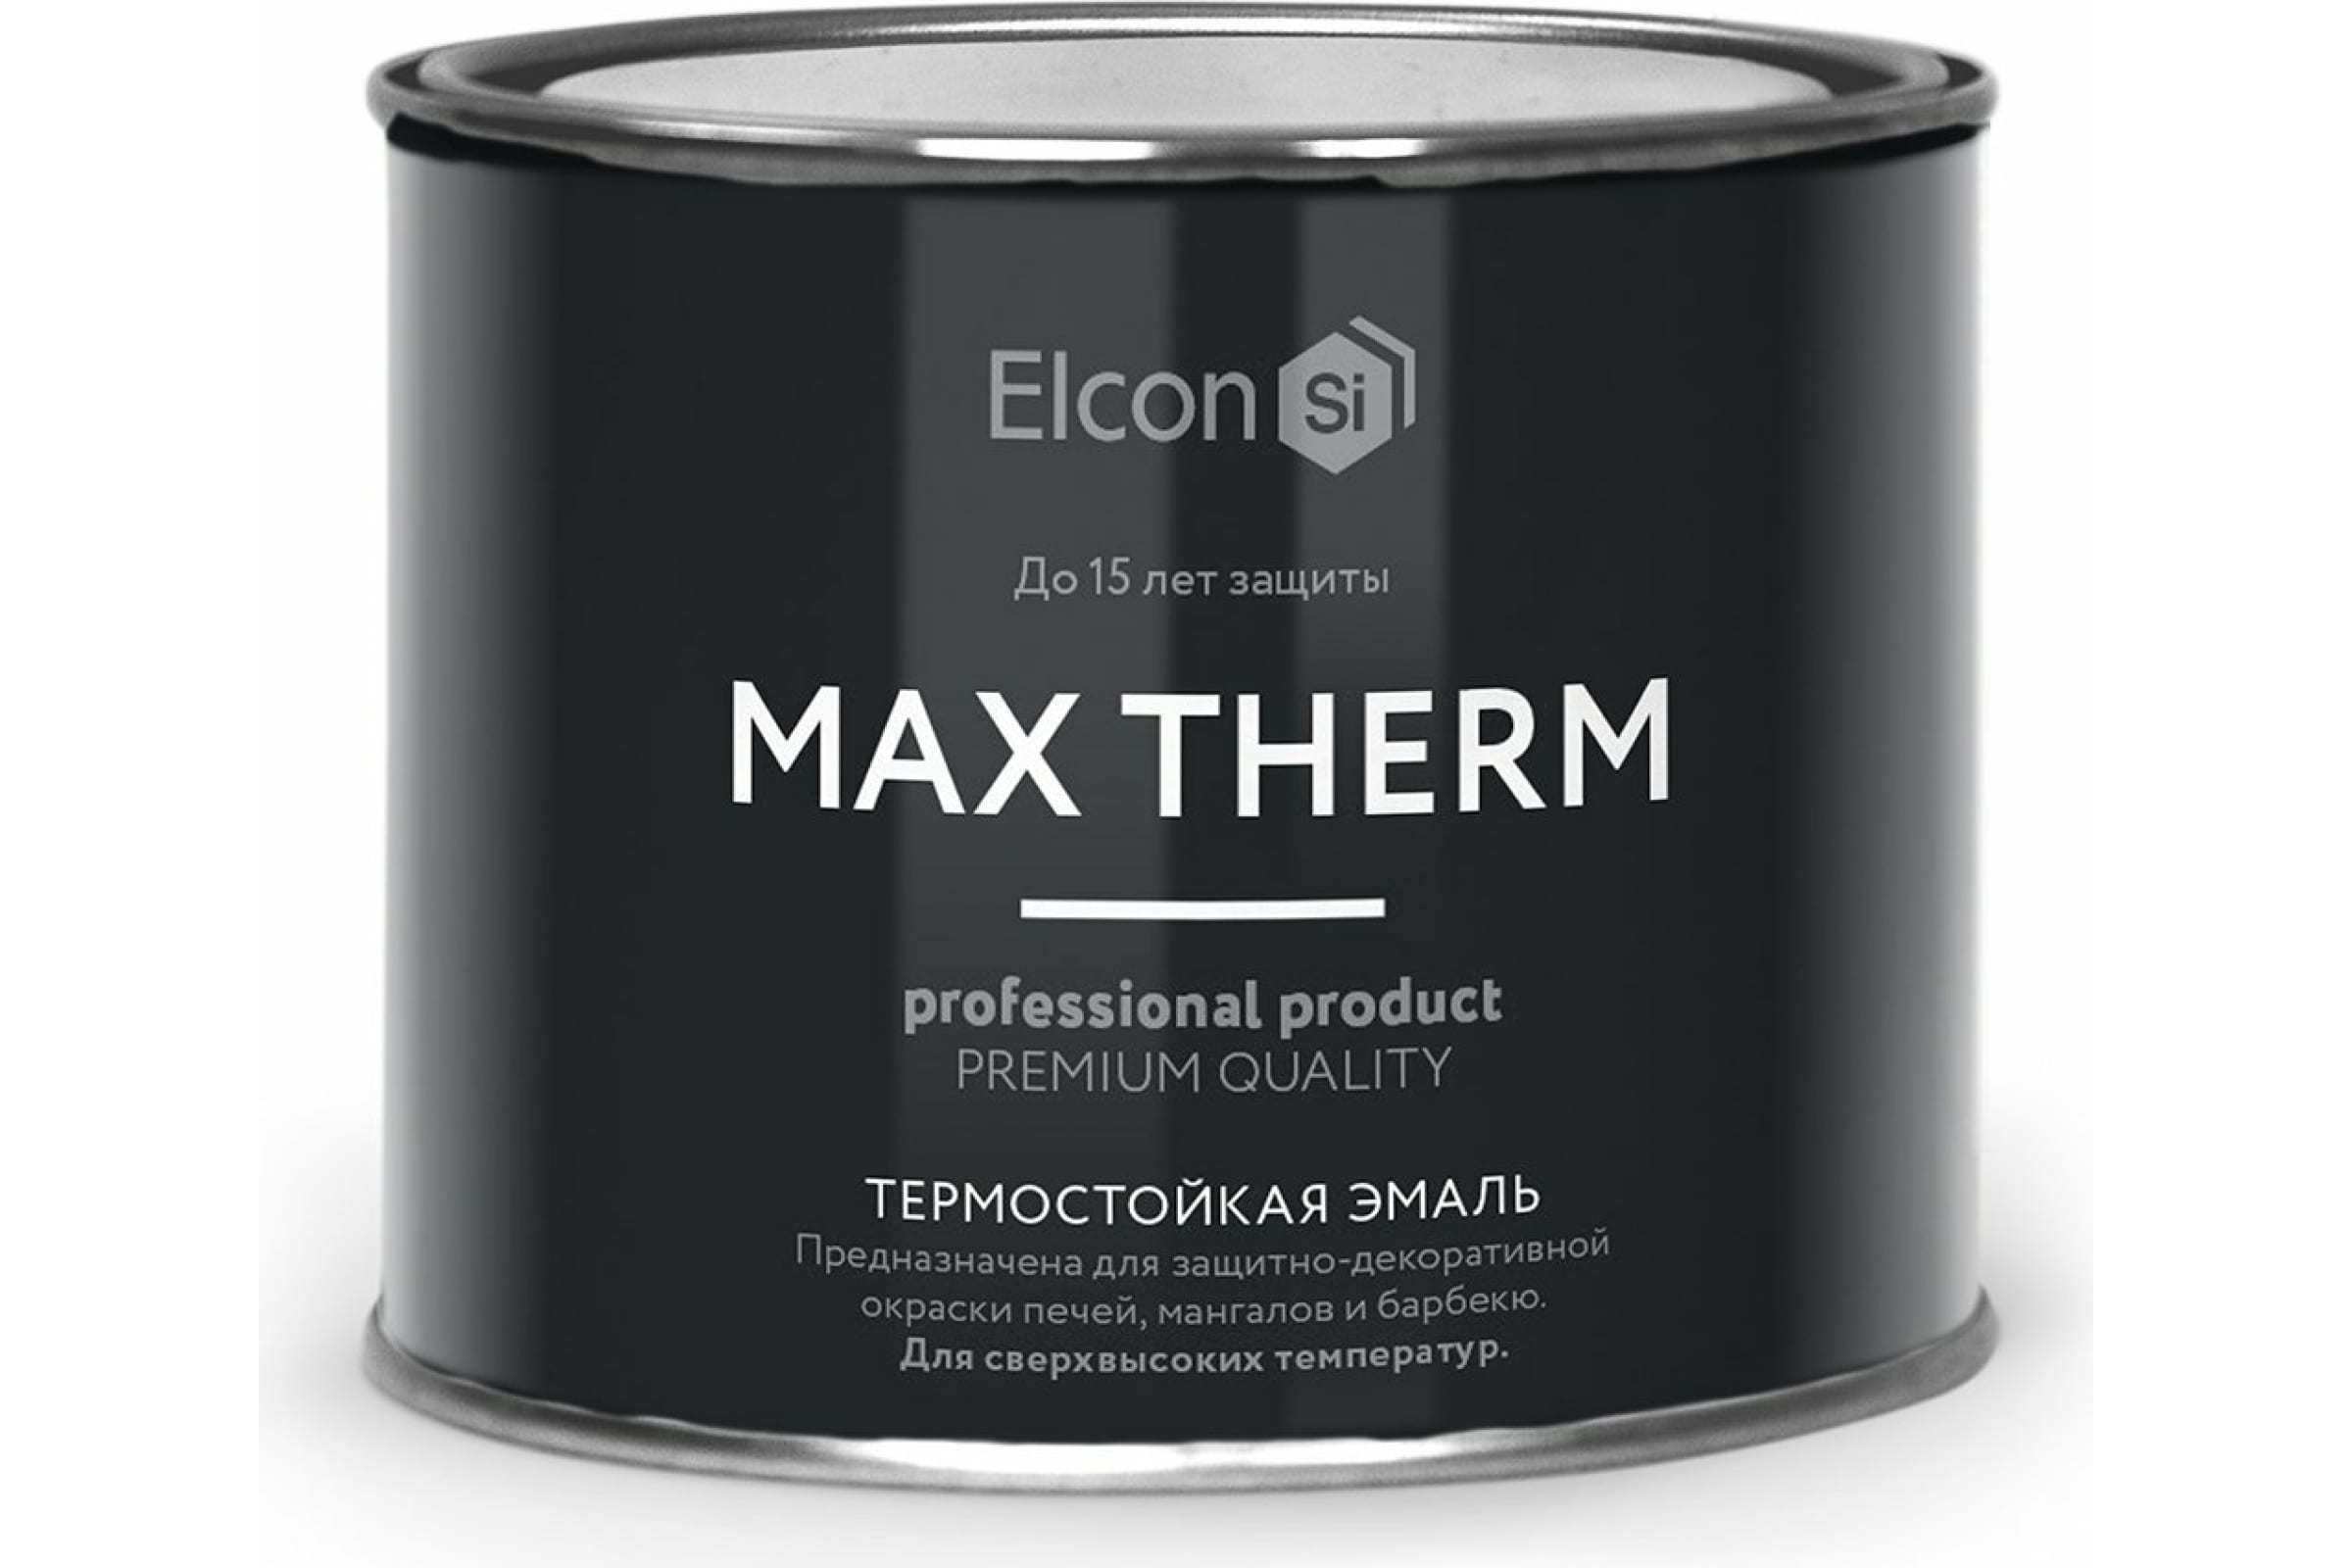 Термостойкая антикоррозионная эмаль Elcon Max Therm до 400 градусов, 0,4 л, синяя термостойкая антикоррозионная эмаль elcon max therm до 400 градусов 0 4 л синяя